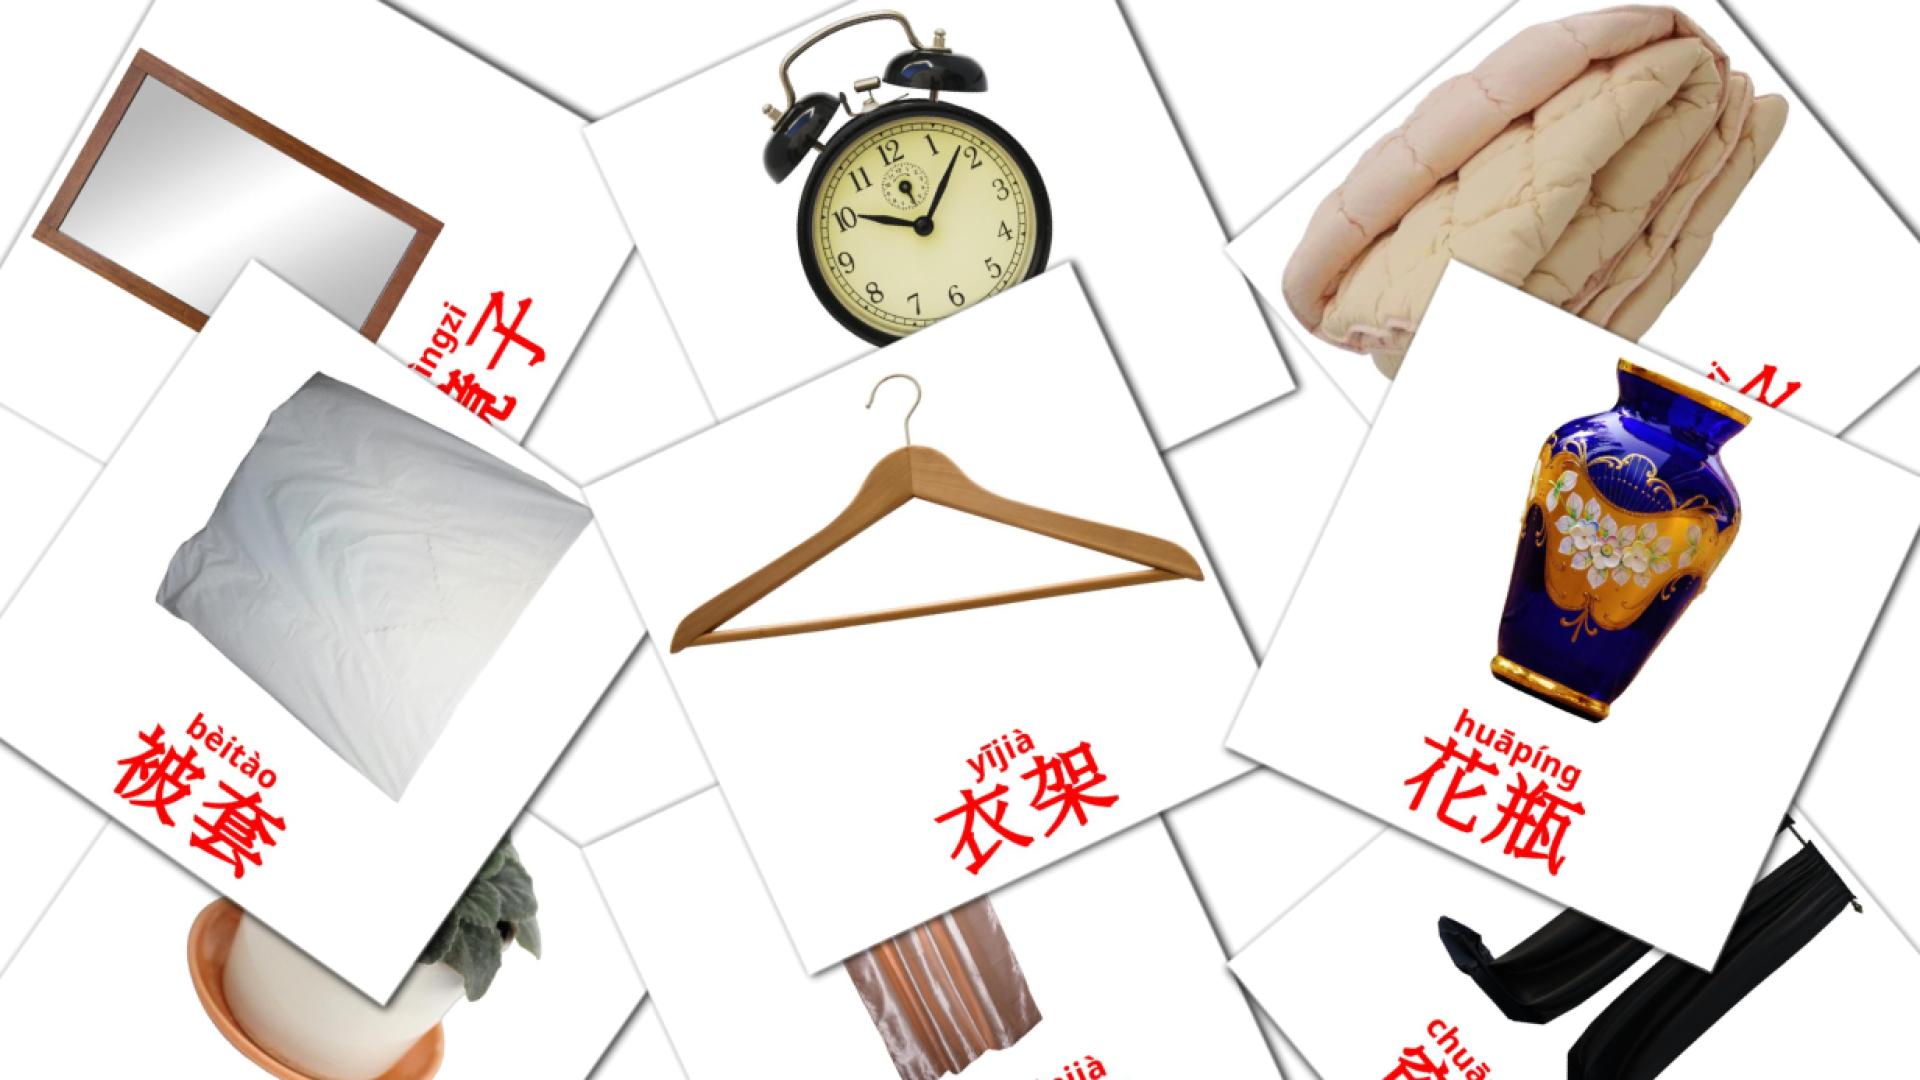 chino(simplificado) tarjetas de vocabulario en 卧室 wòshì